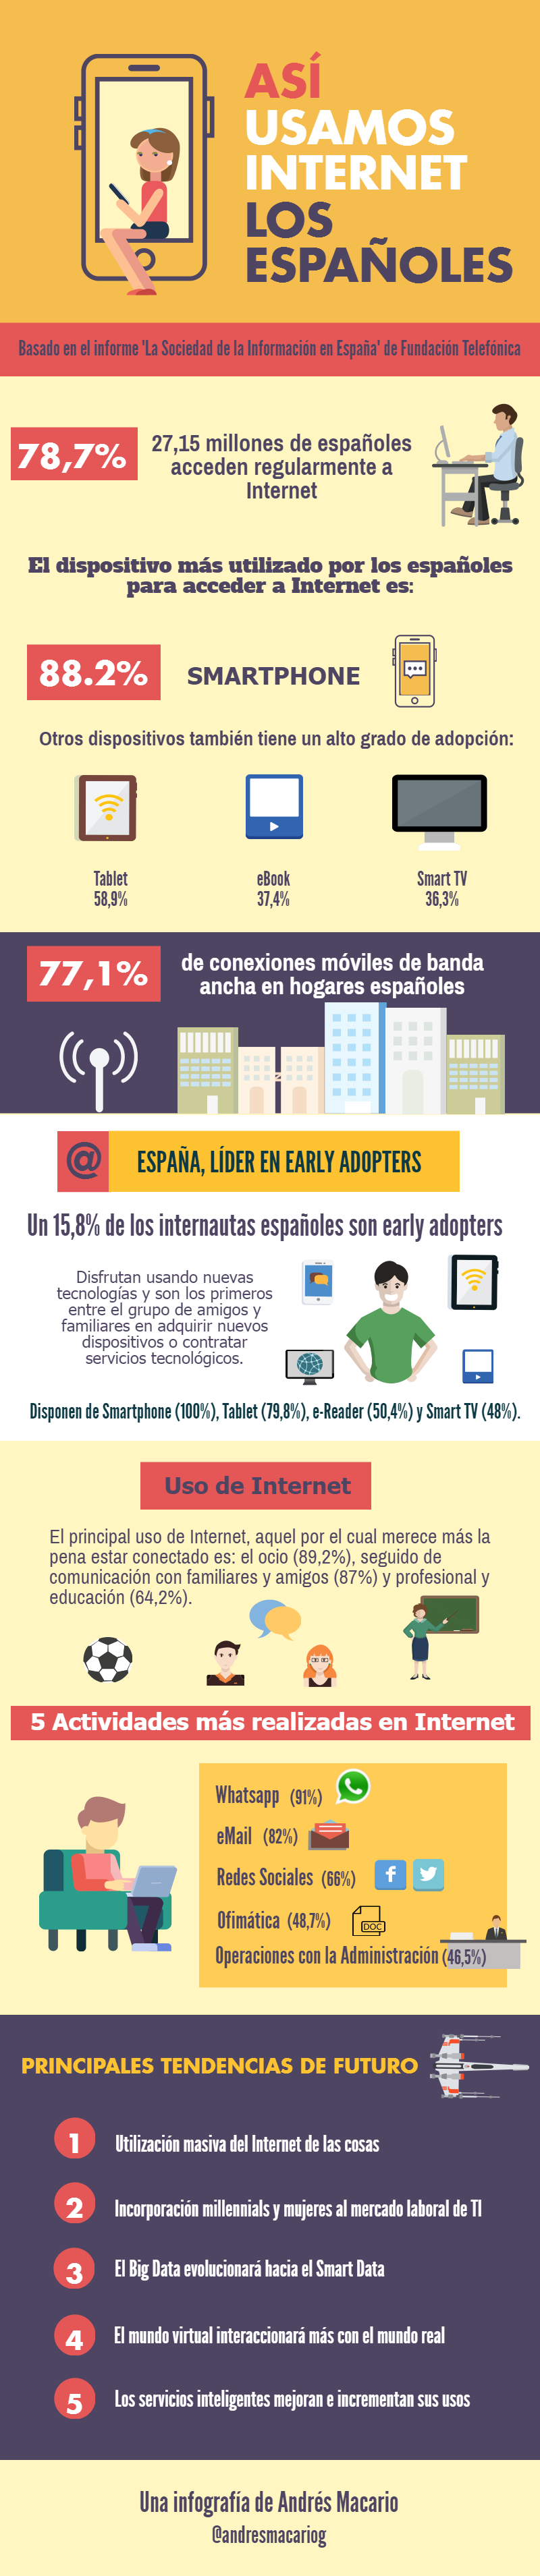 Asi usamos-Internet los-espanoles - Infografia Andres Macario